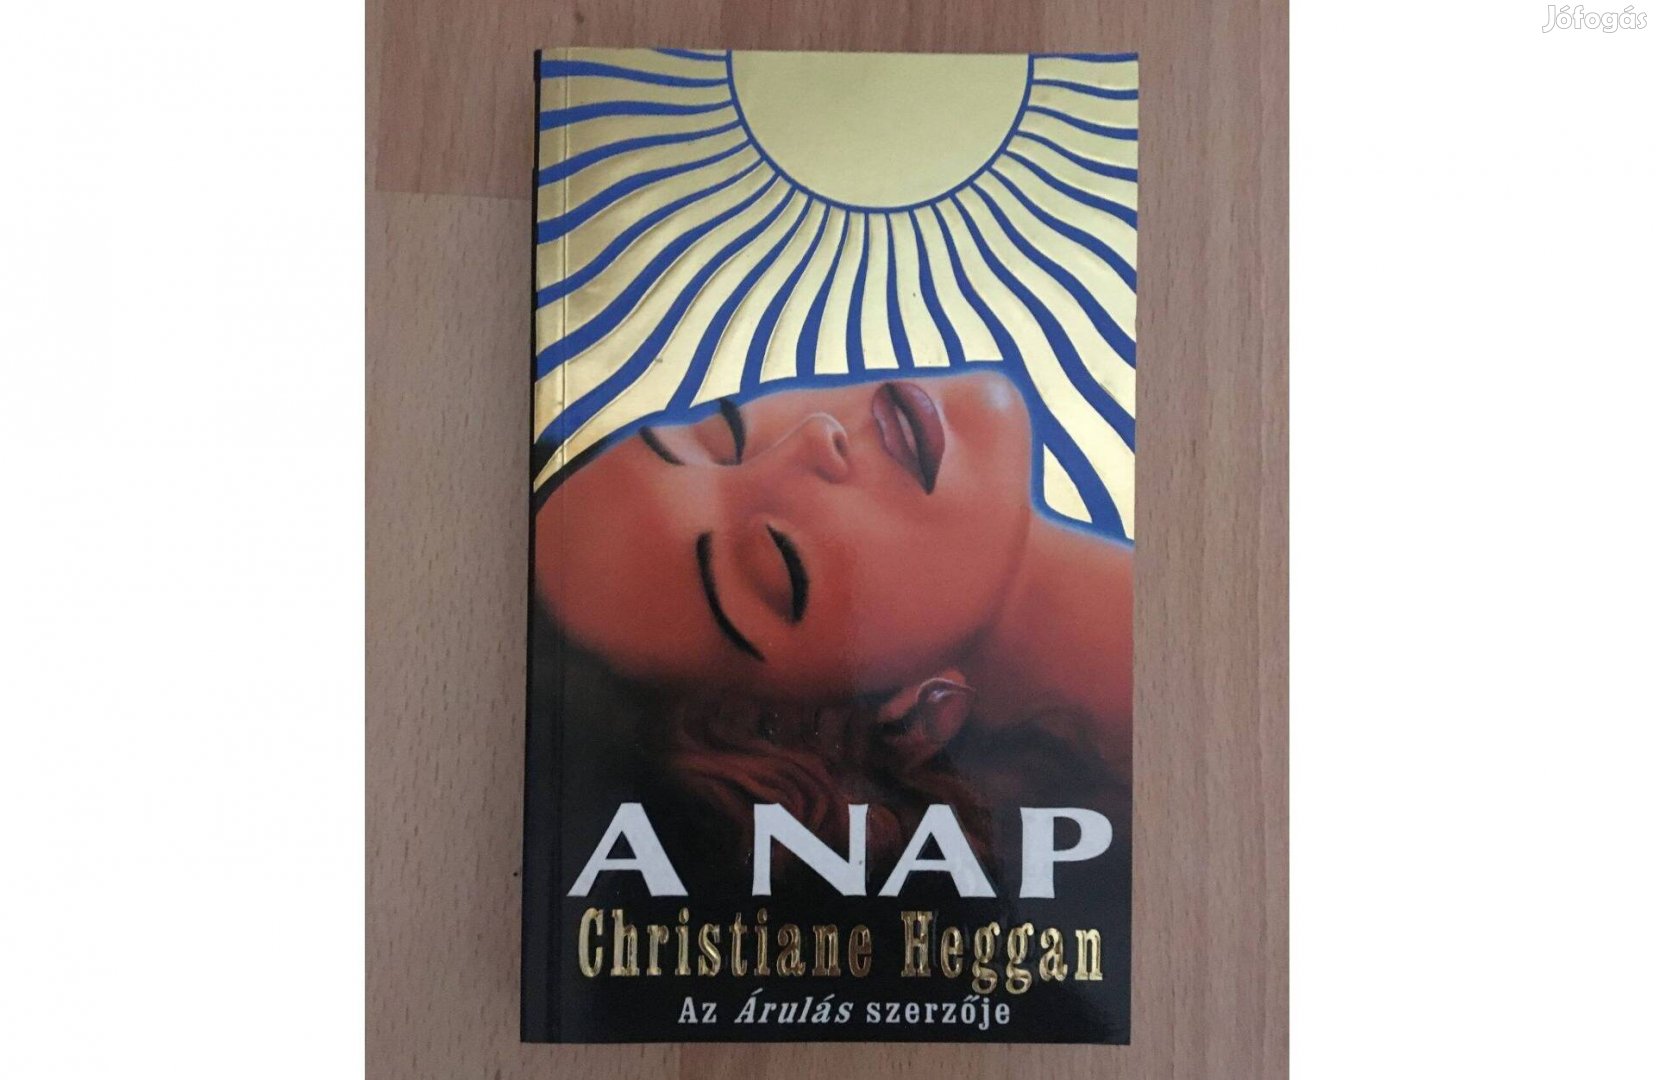 Christiané Heggan: A nap c. könyv